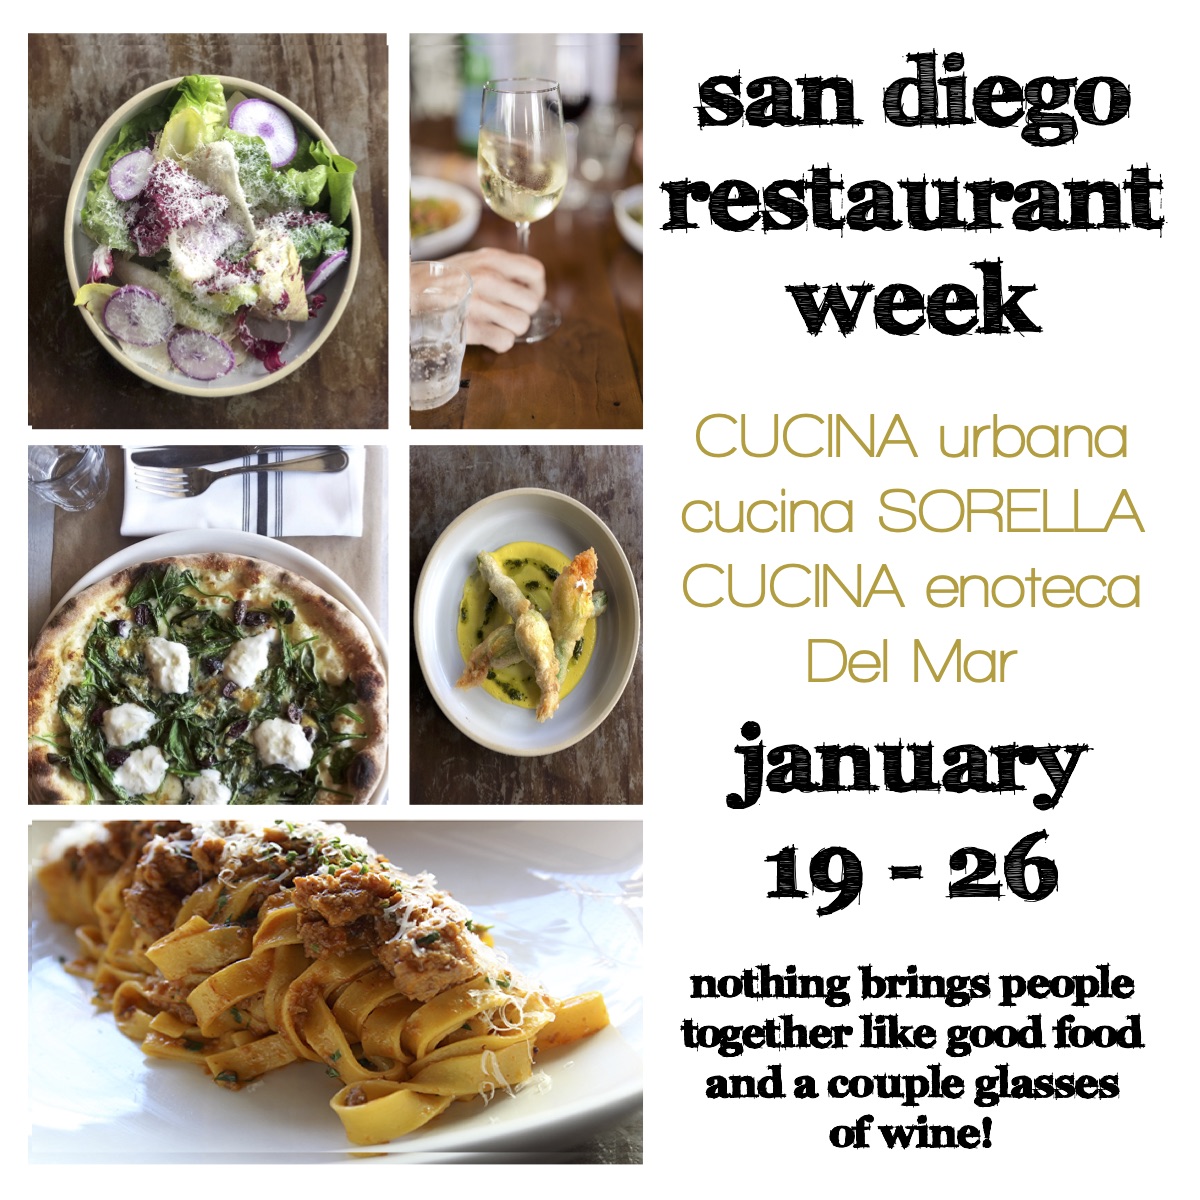 San Diego Restaurant Week at CUCINA